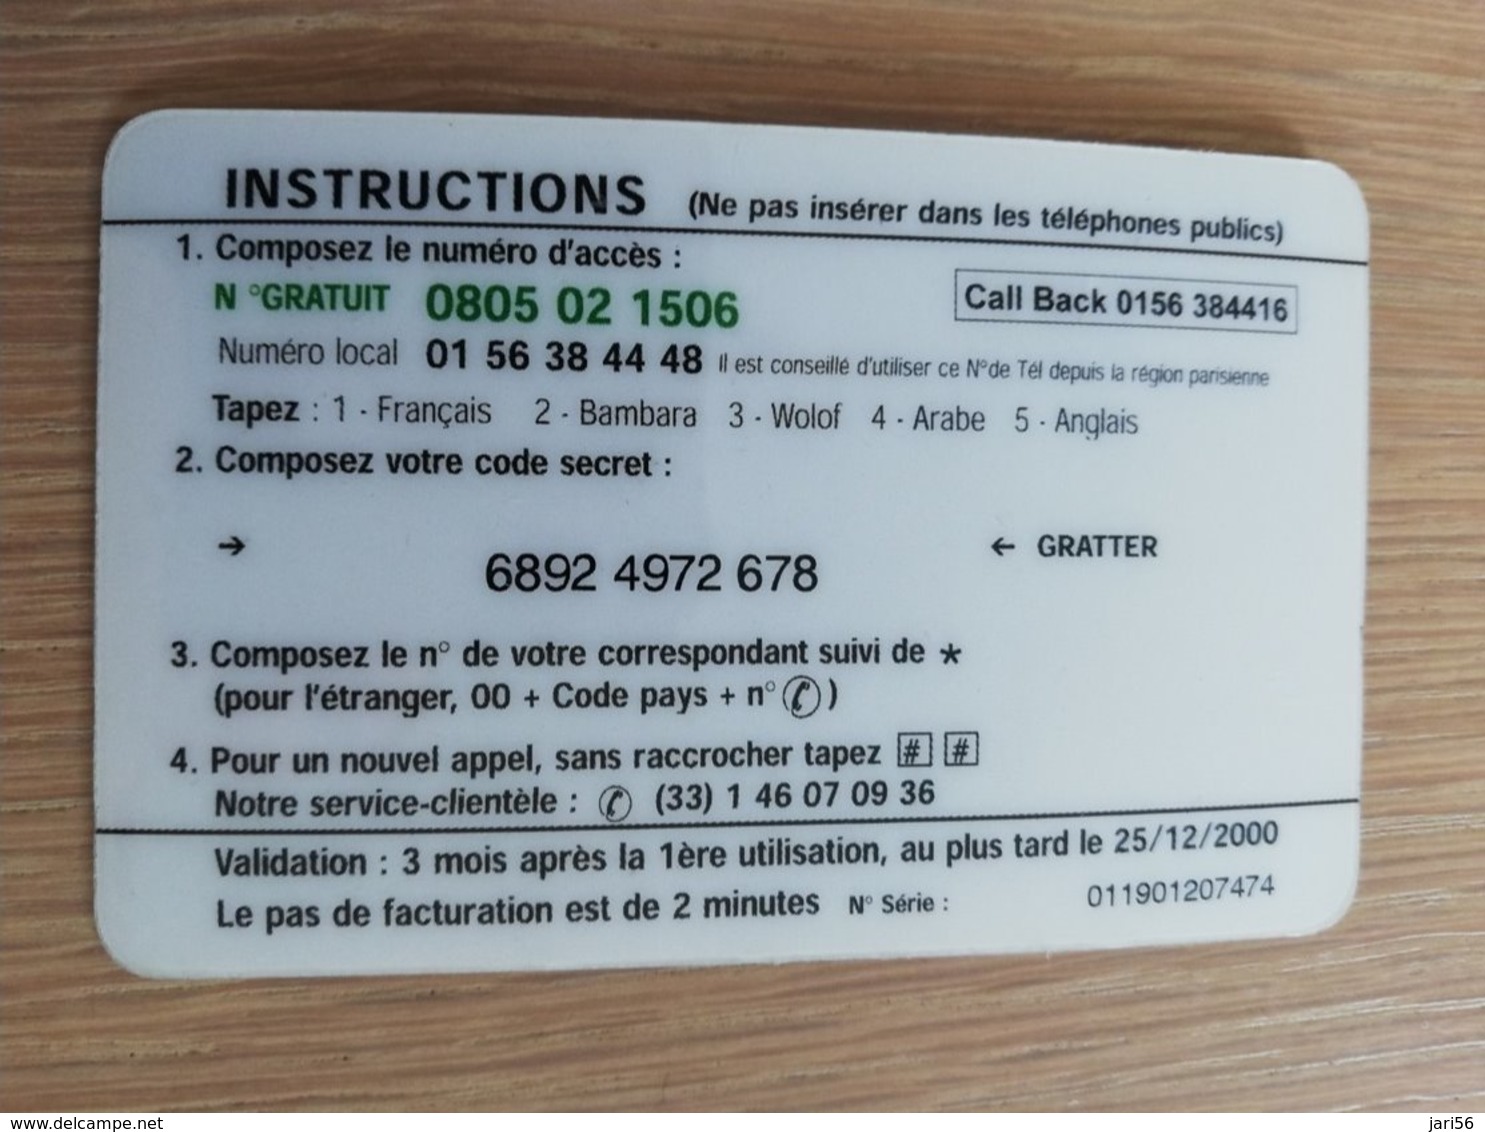 FRANCE/FRANKRIJK  50 FF BONJOUR AFRIQUE    PREPAID  USED    ** 1464** - Mobicartes (GSM/SIM)